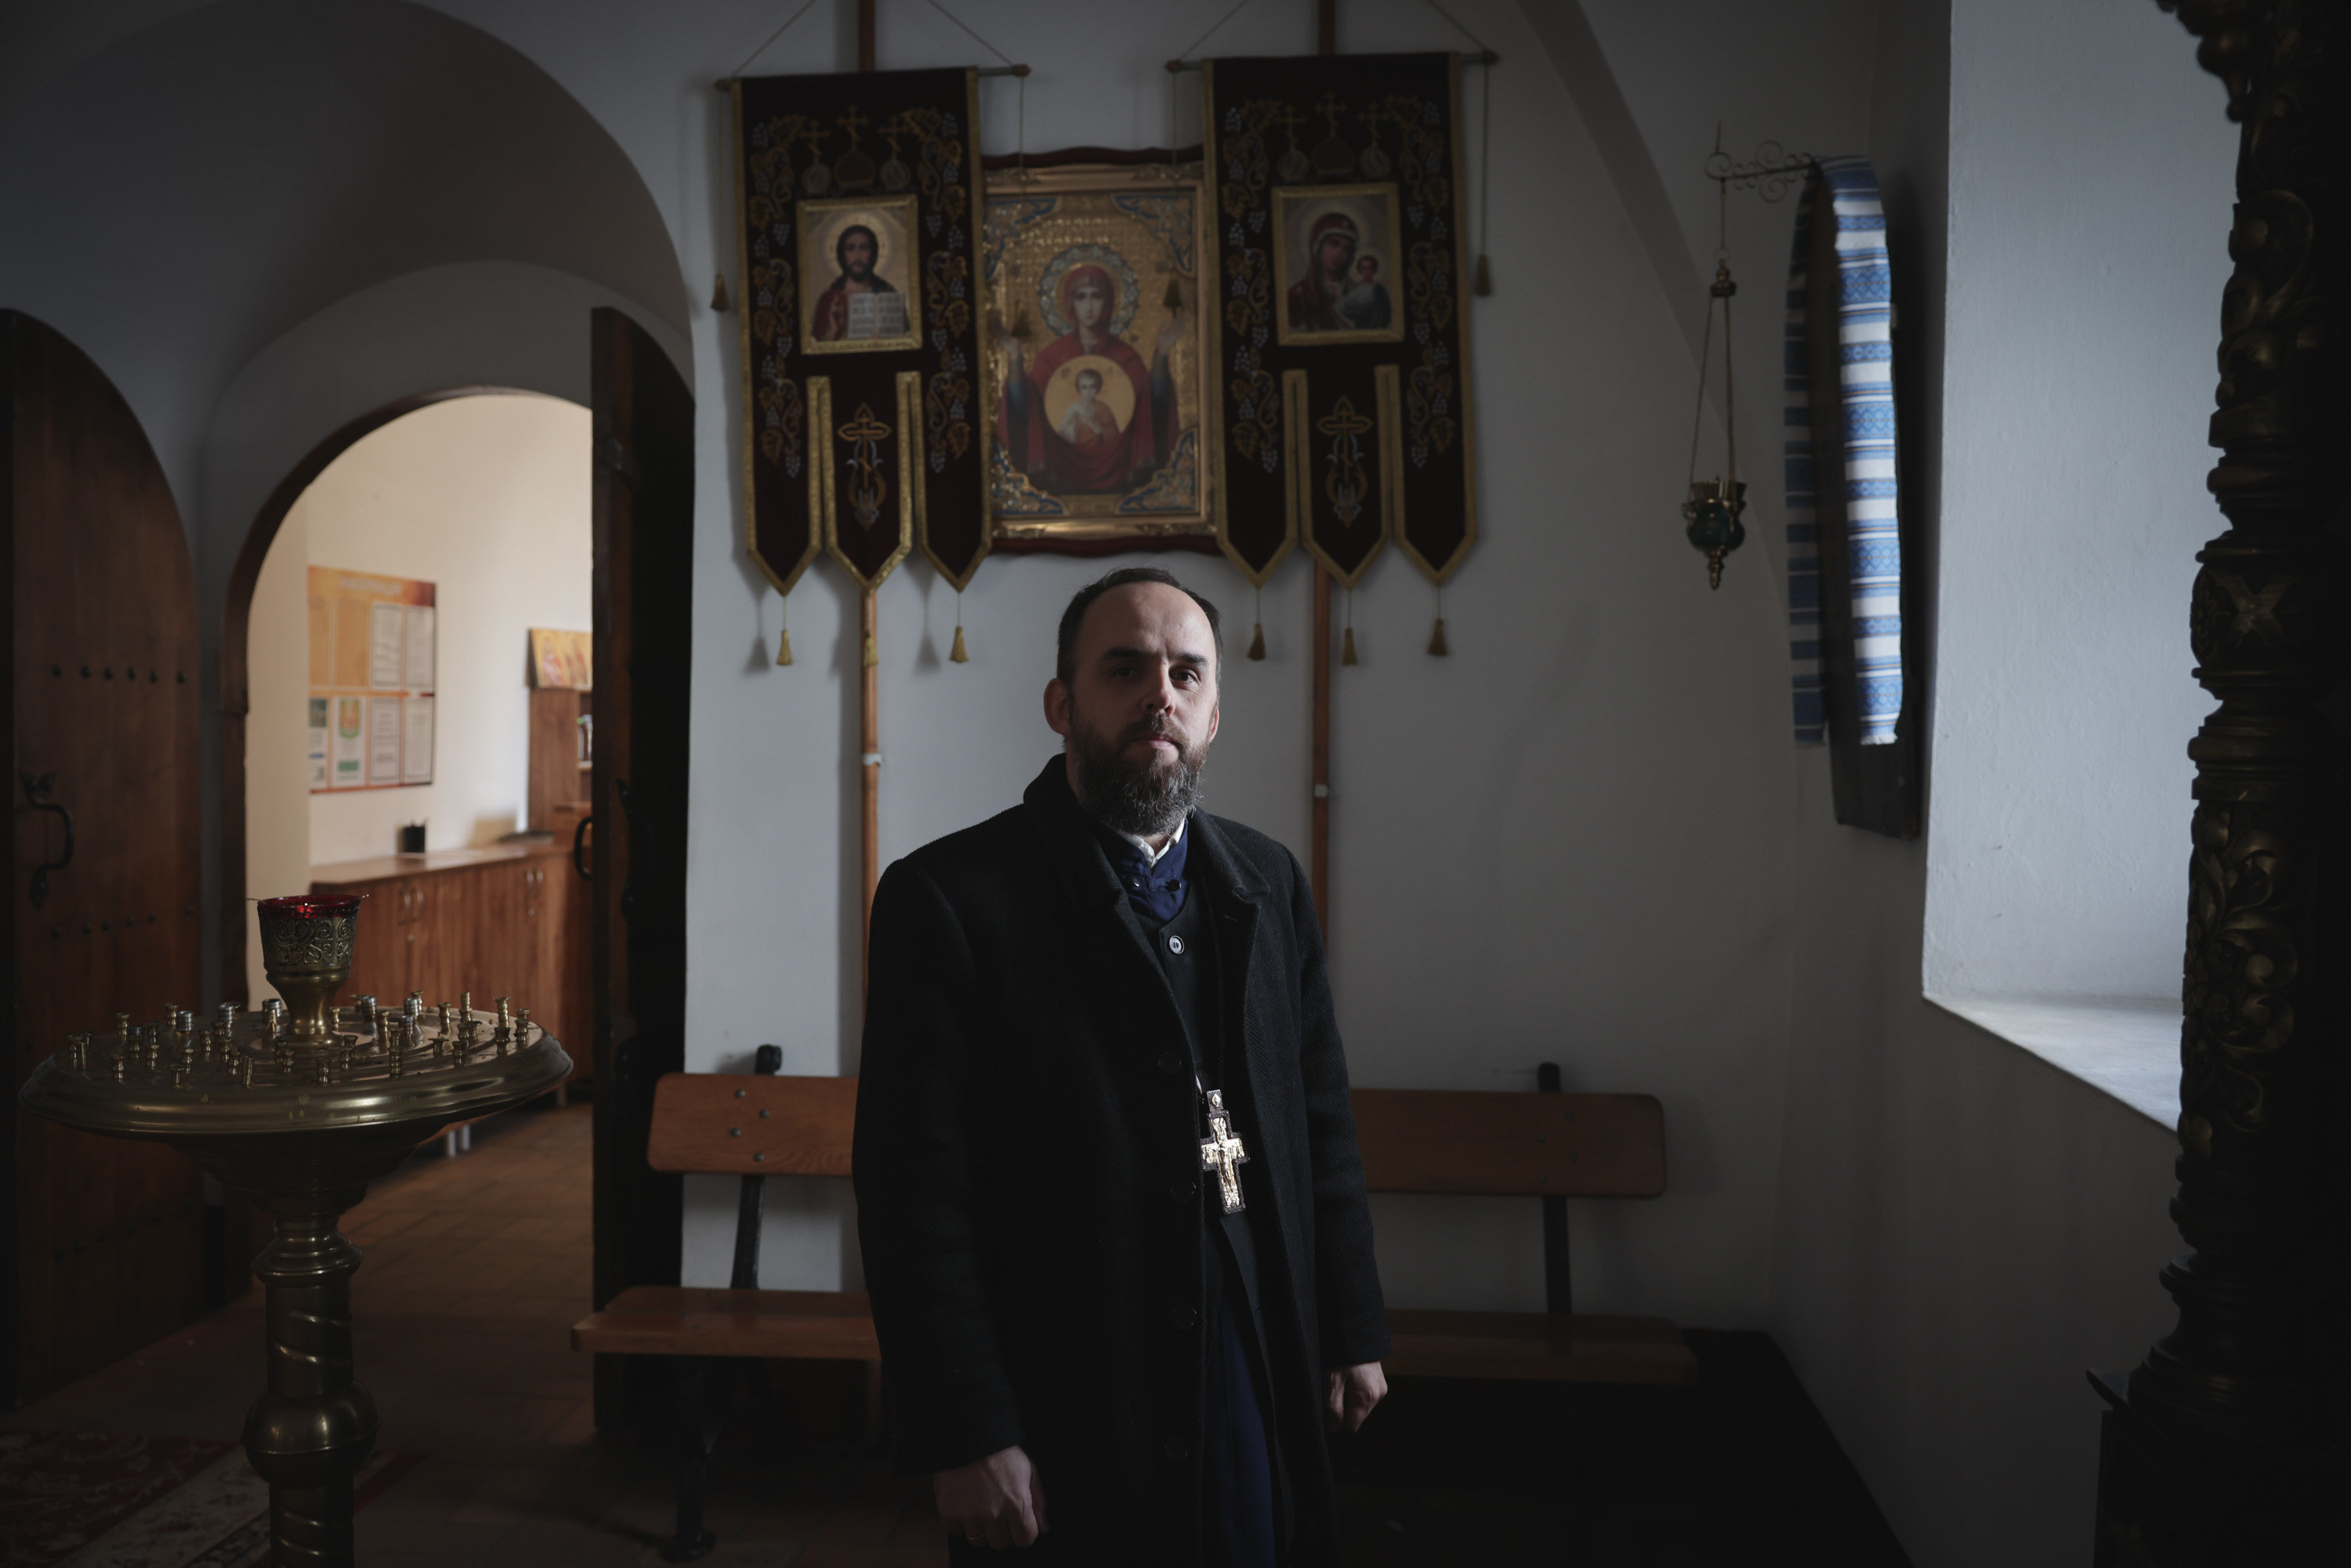 Le père Pavlo (ici dans son église Sainte-Sophie, à Kiev, ce vendredi) tient un discours très critique envers le Patriache Kirill, chef de l’Église orthodoxe de Russie. LP/Philippe de Poulpiquet